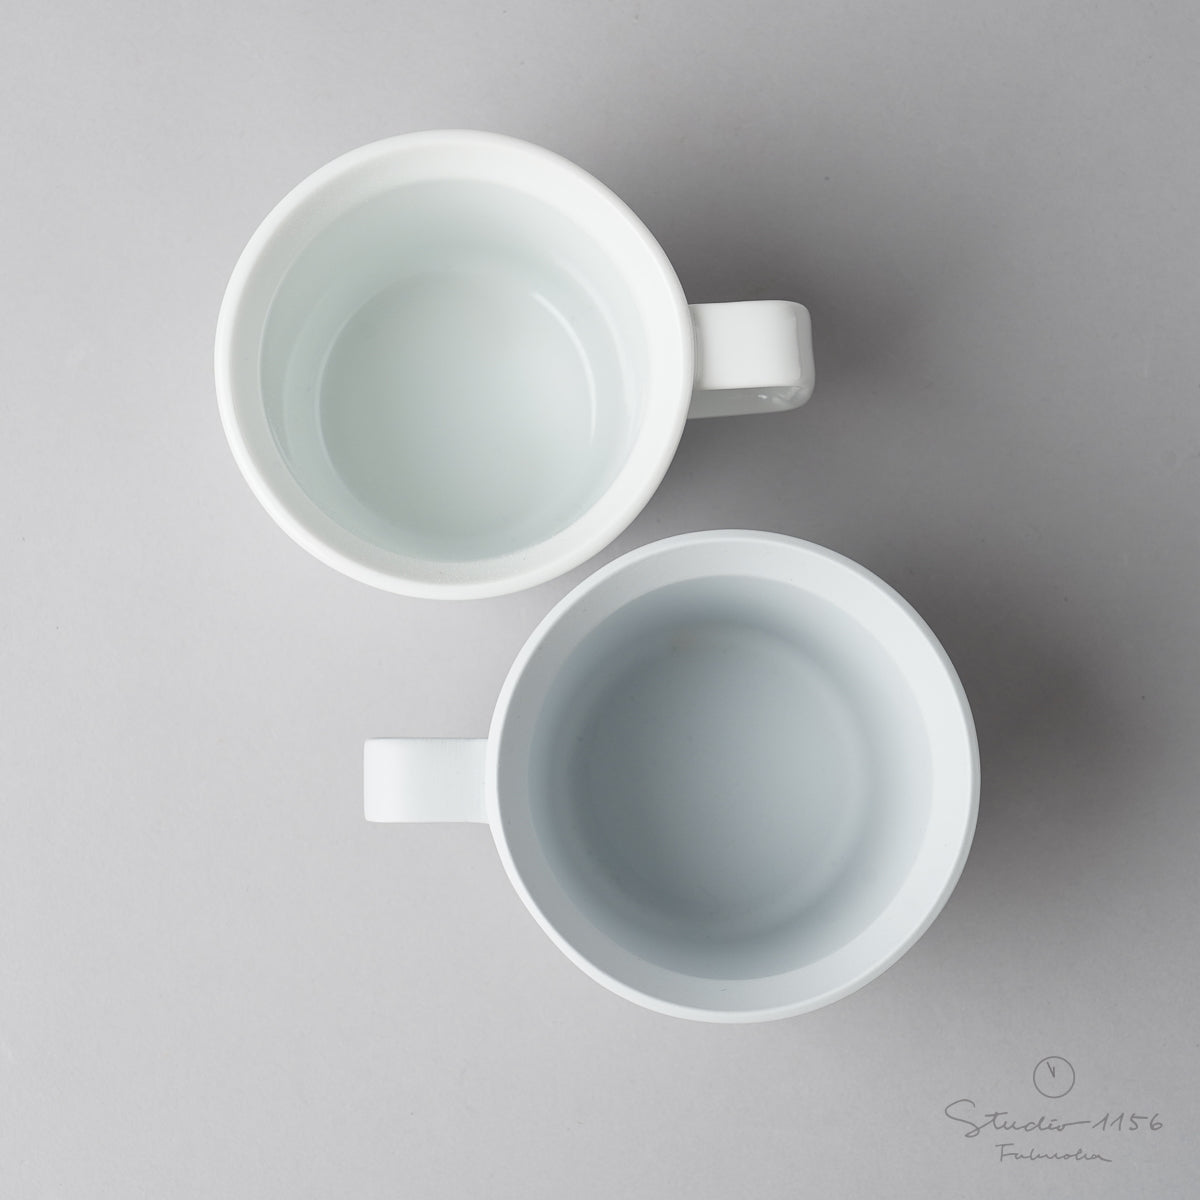 有田焼 コーヒカップ w/ Handle / TY Coffee Cup Handle 190ml 1616 / Arita Japan Studio1156